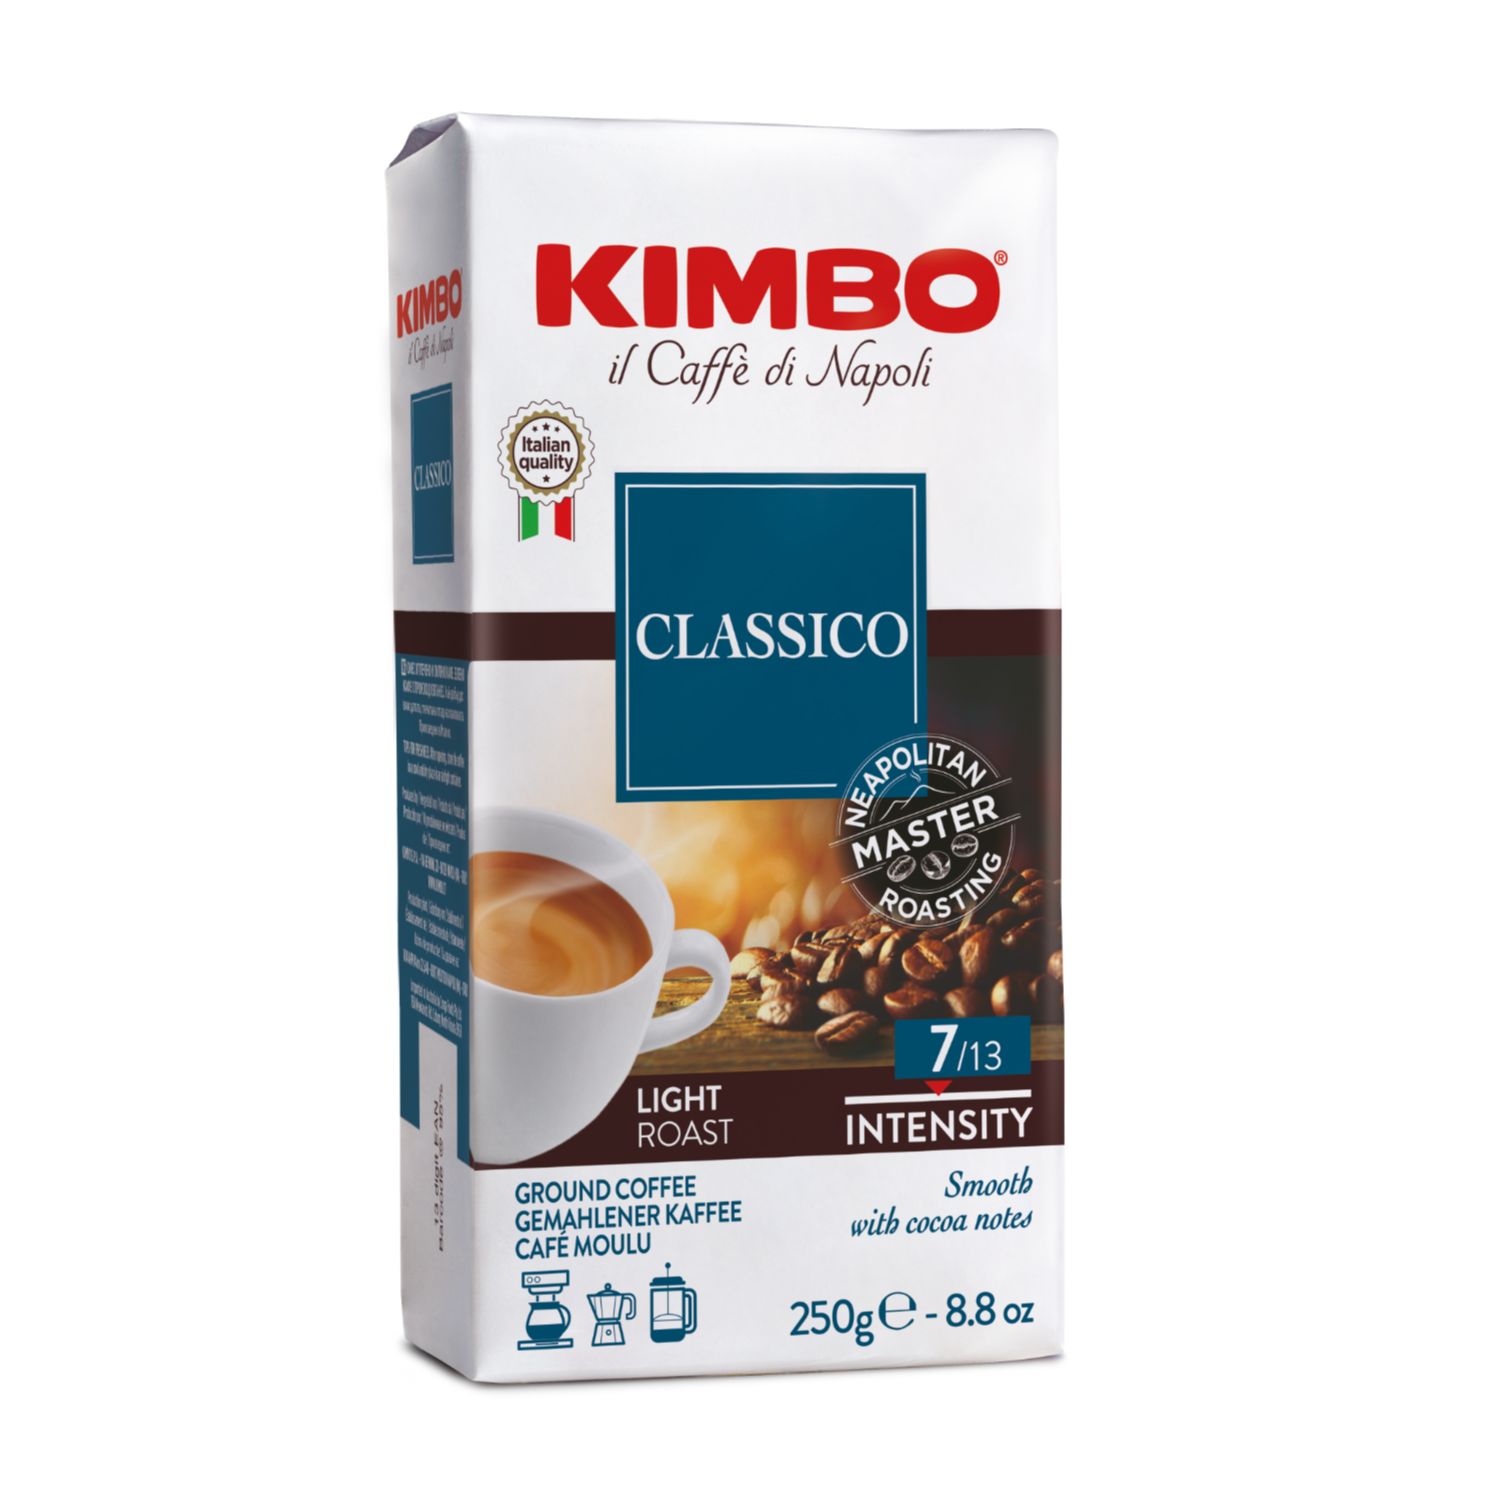 Кимбо, Мляно кафе вакуум Арома класико, 250гр